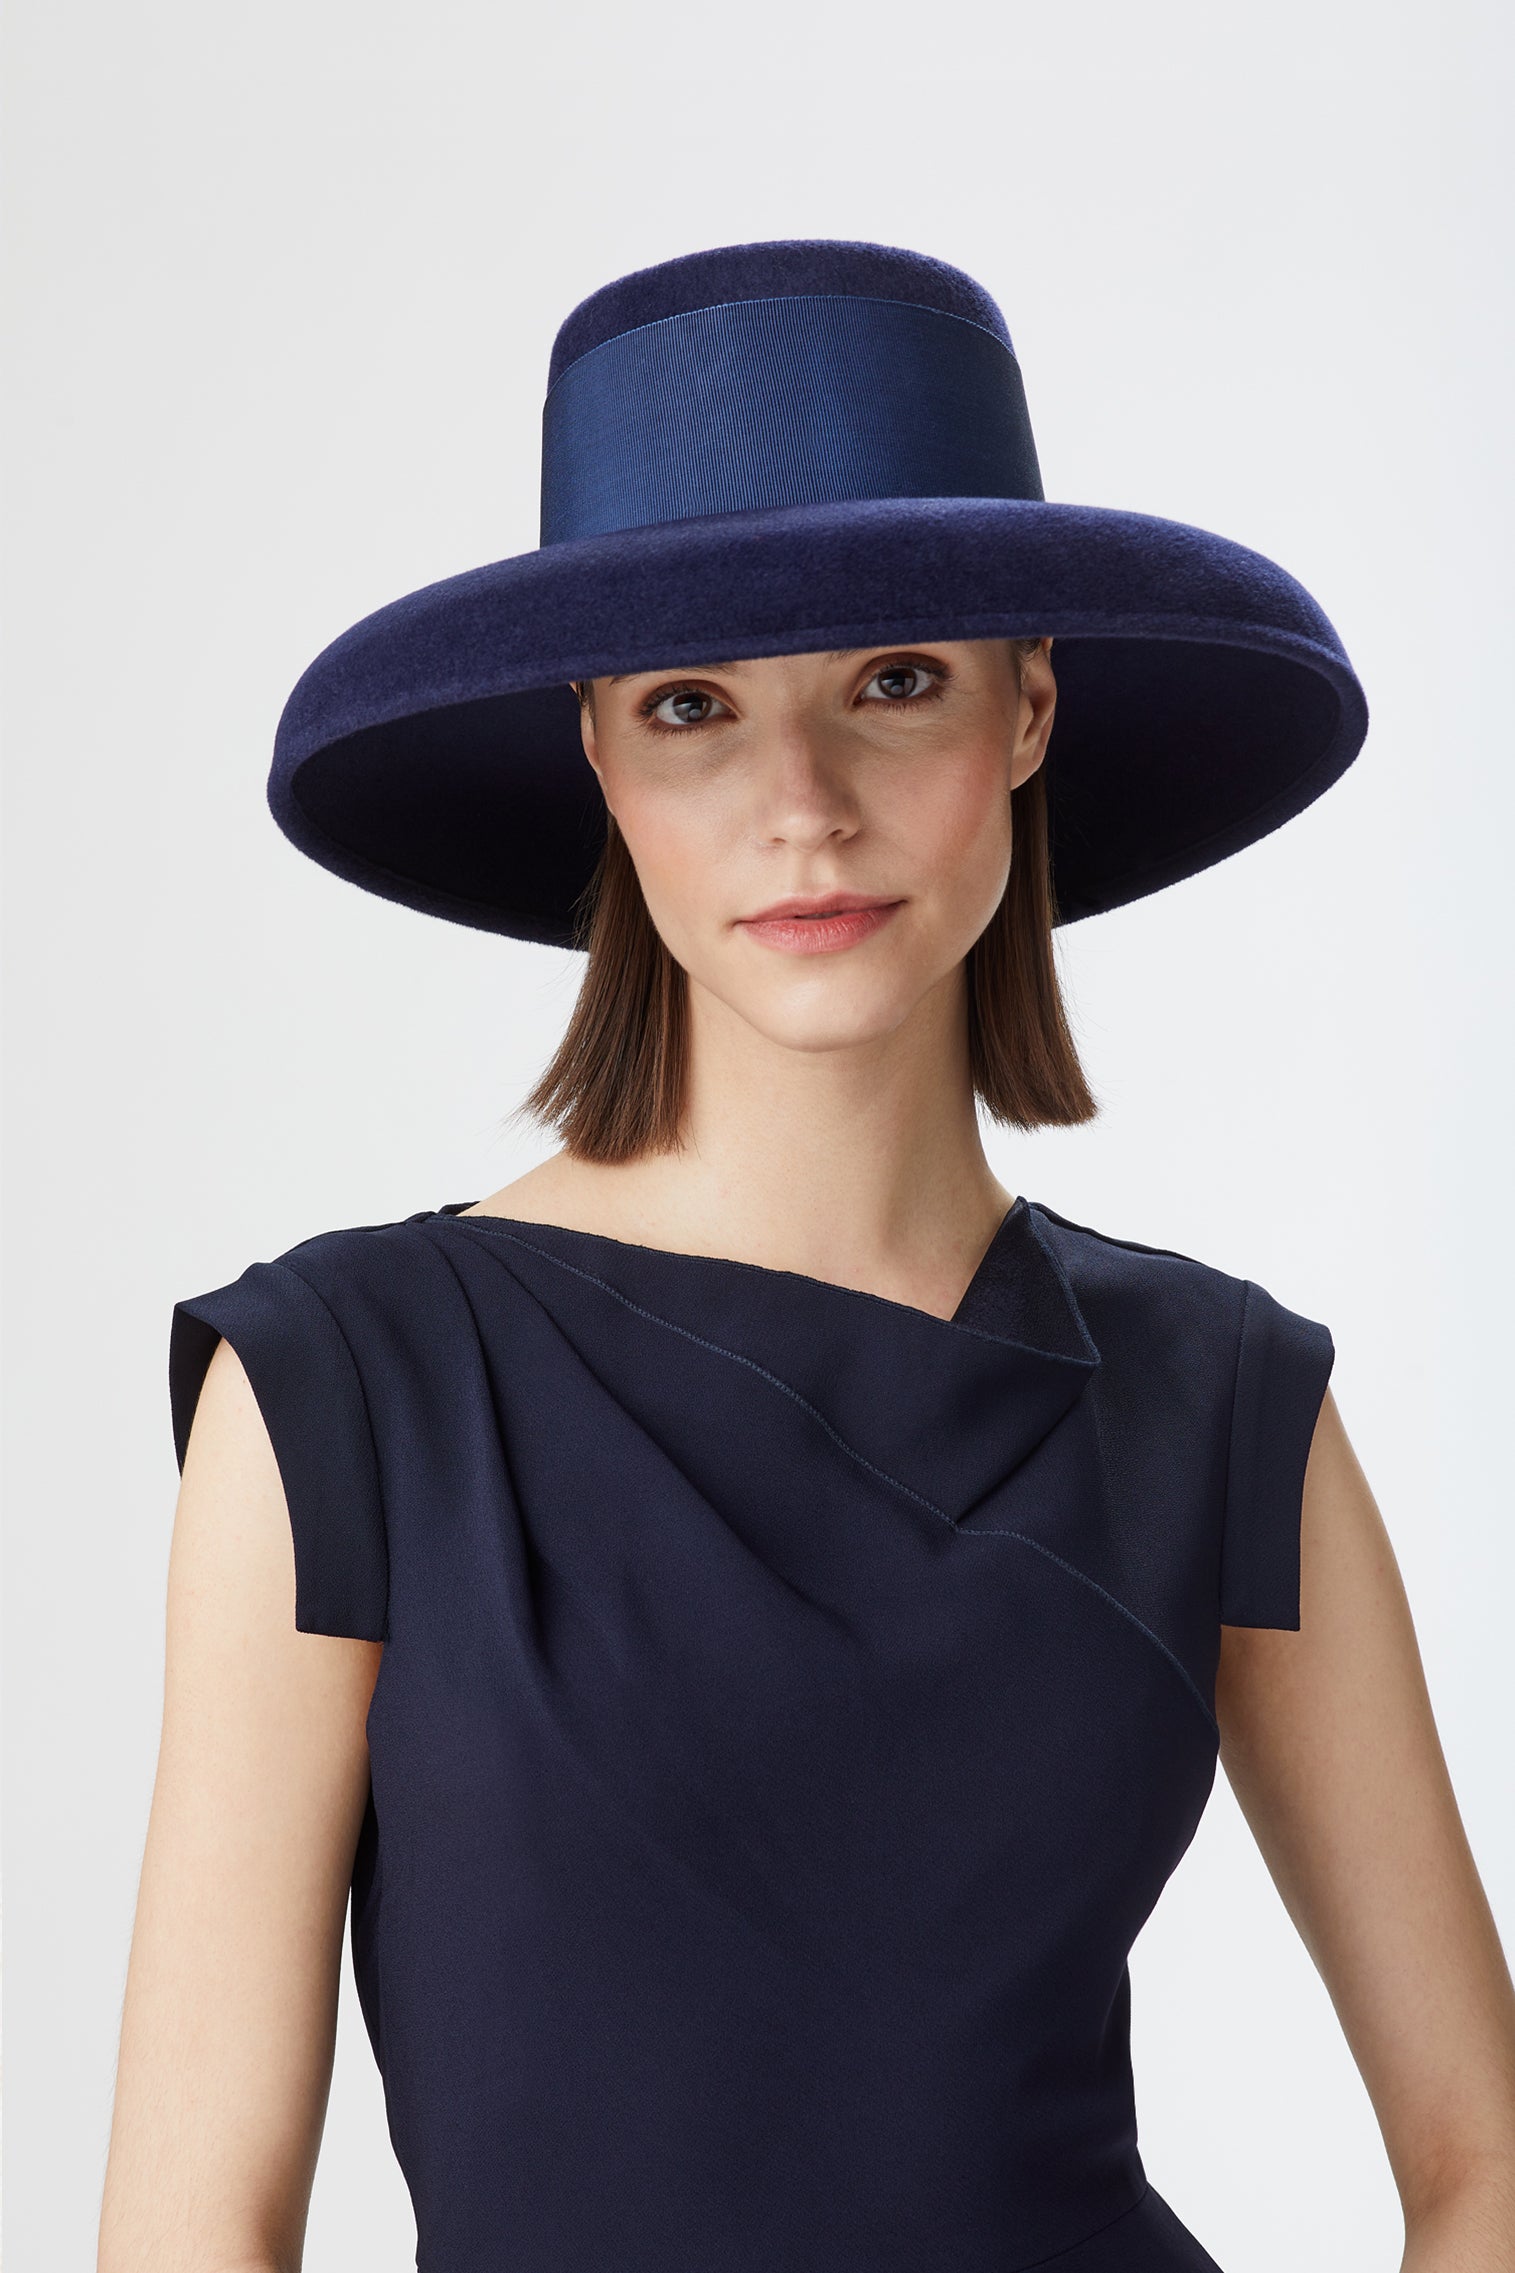 Tiffany Drop-Brim Hat - All Ready to Wear - Lock & Co. Hatters London UK